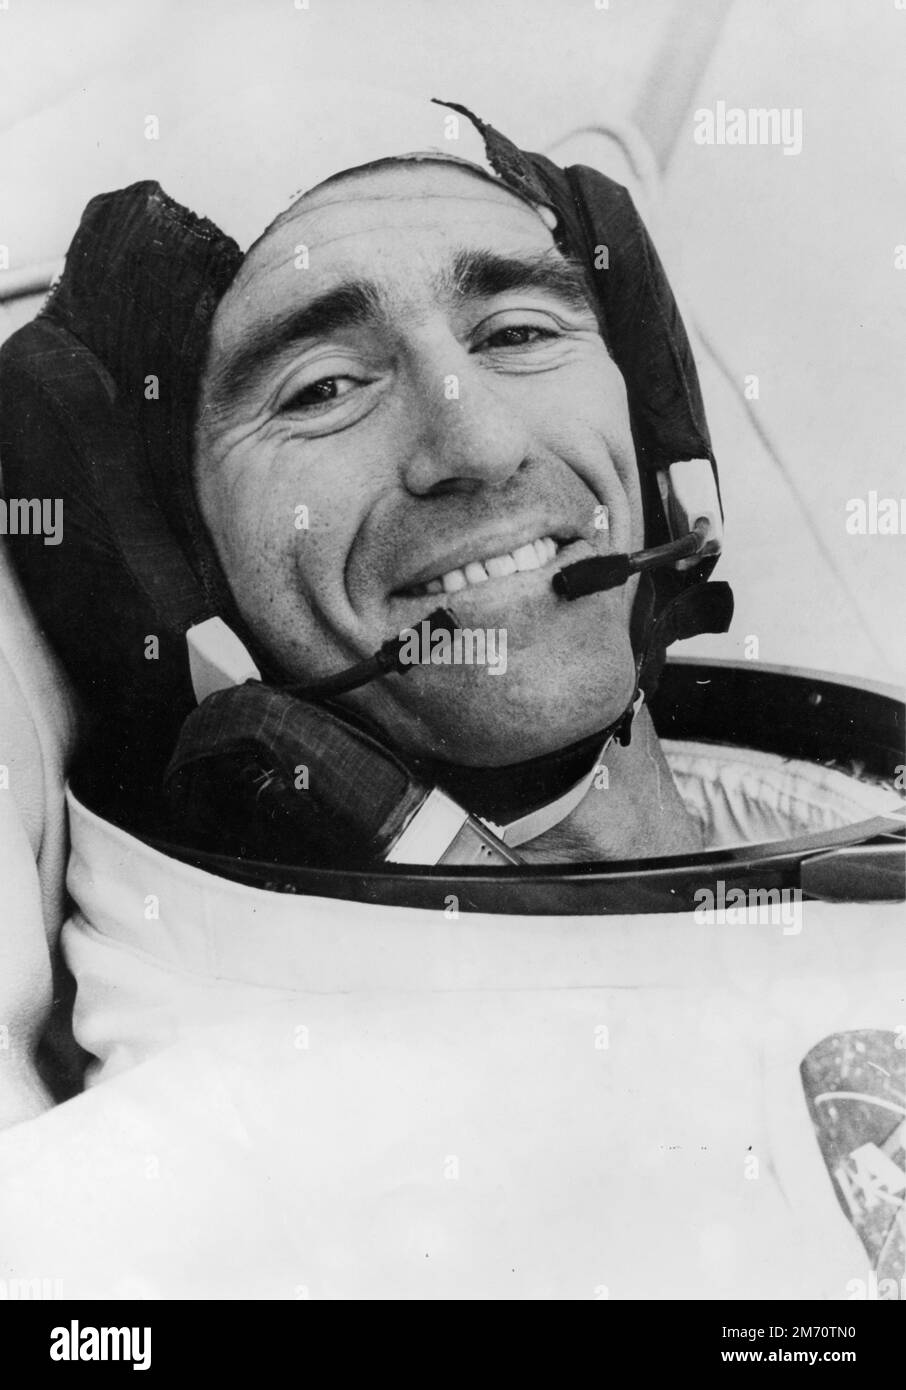 Cape Canaveral, États-Unis. 11th octobre 1968. L'astronaute de la NASA Walter Cunningham, pilote de module lunaire pour la mission Apollo 7, s'est mis en route avant le lancement au Centre spatial Kennedy, à 11 octobre 1968, au Cap Canaveral, en Floride. Cunningham meurt 4 janvier 2023 à l'âge de 90 ans, le dernier membre survivant de la mission Apollo 7 de la NASA. Credit: Planetpix/Alamy Live News Banque D'Images